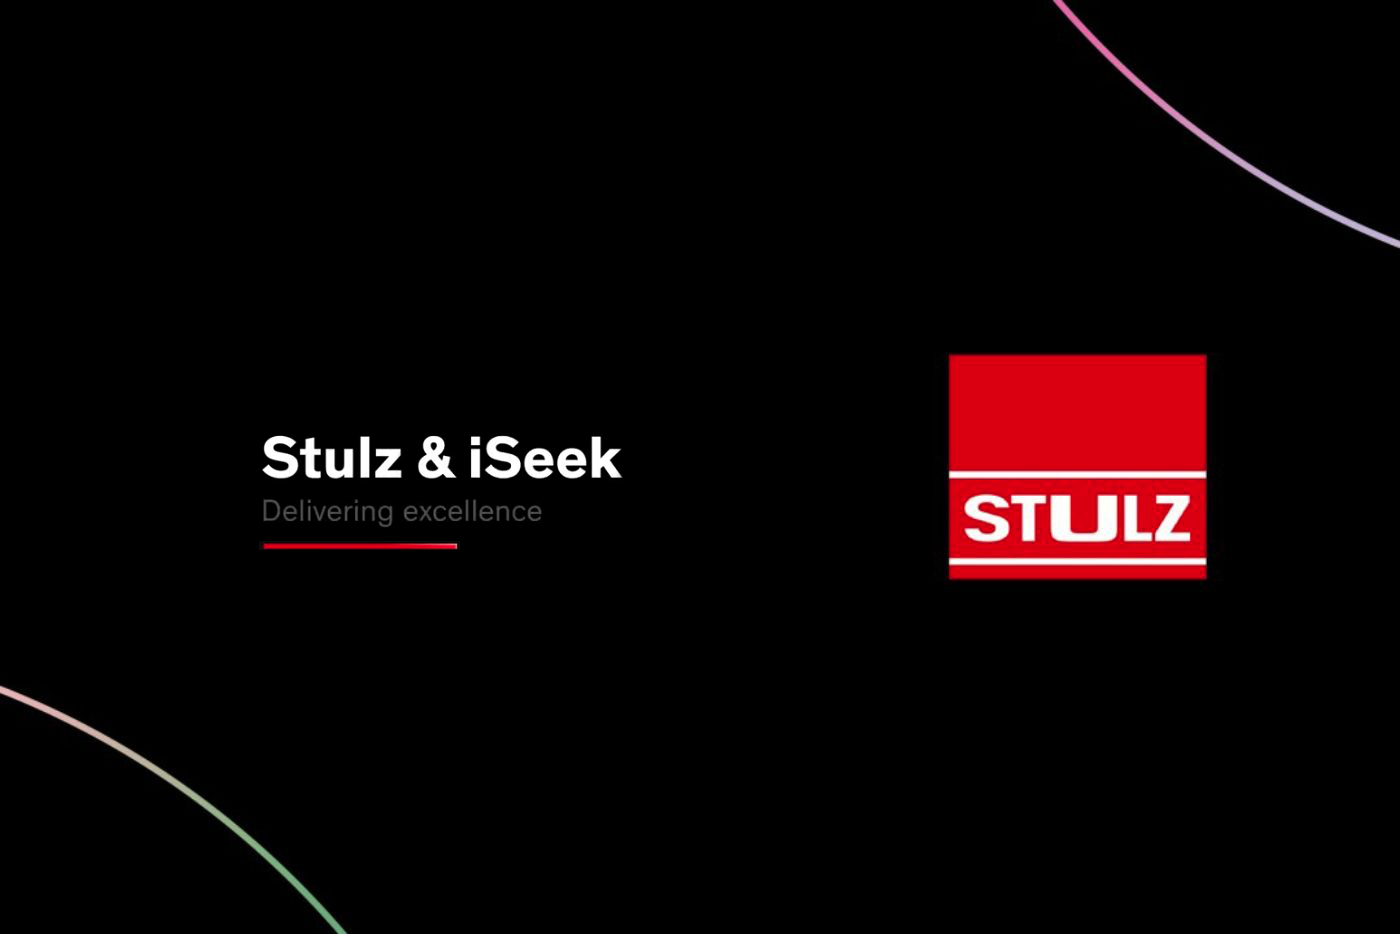 Stulz and iSeek